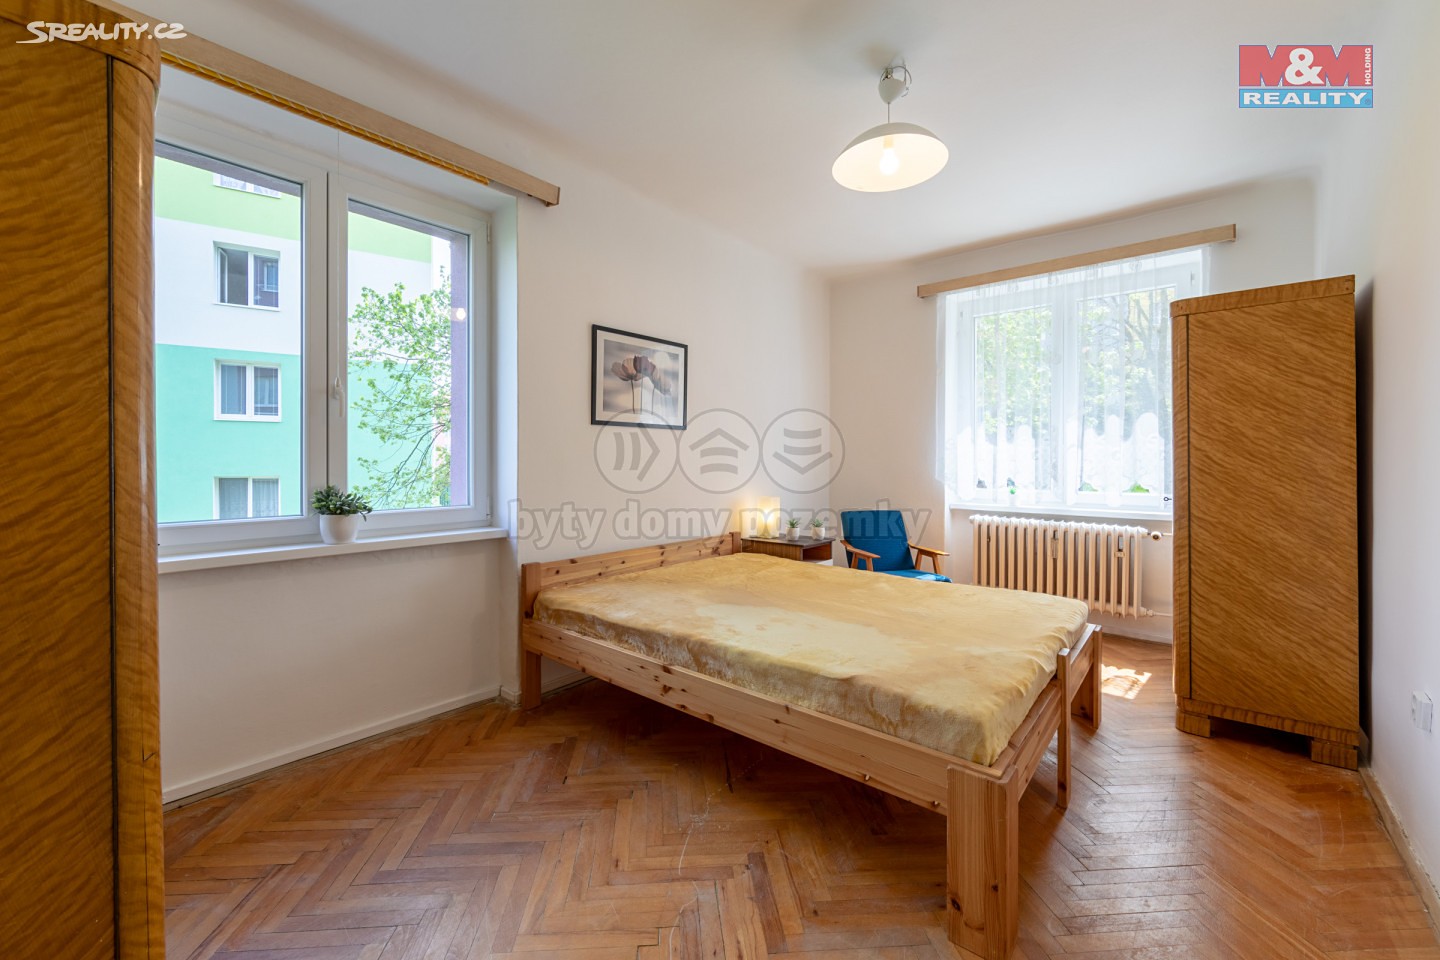 Prodej bytu 2+1 53 m², Sokolov